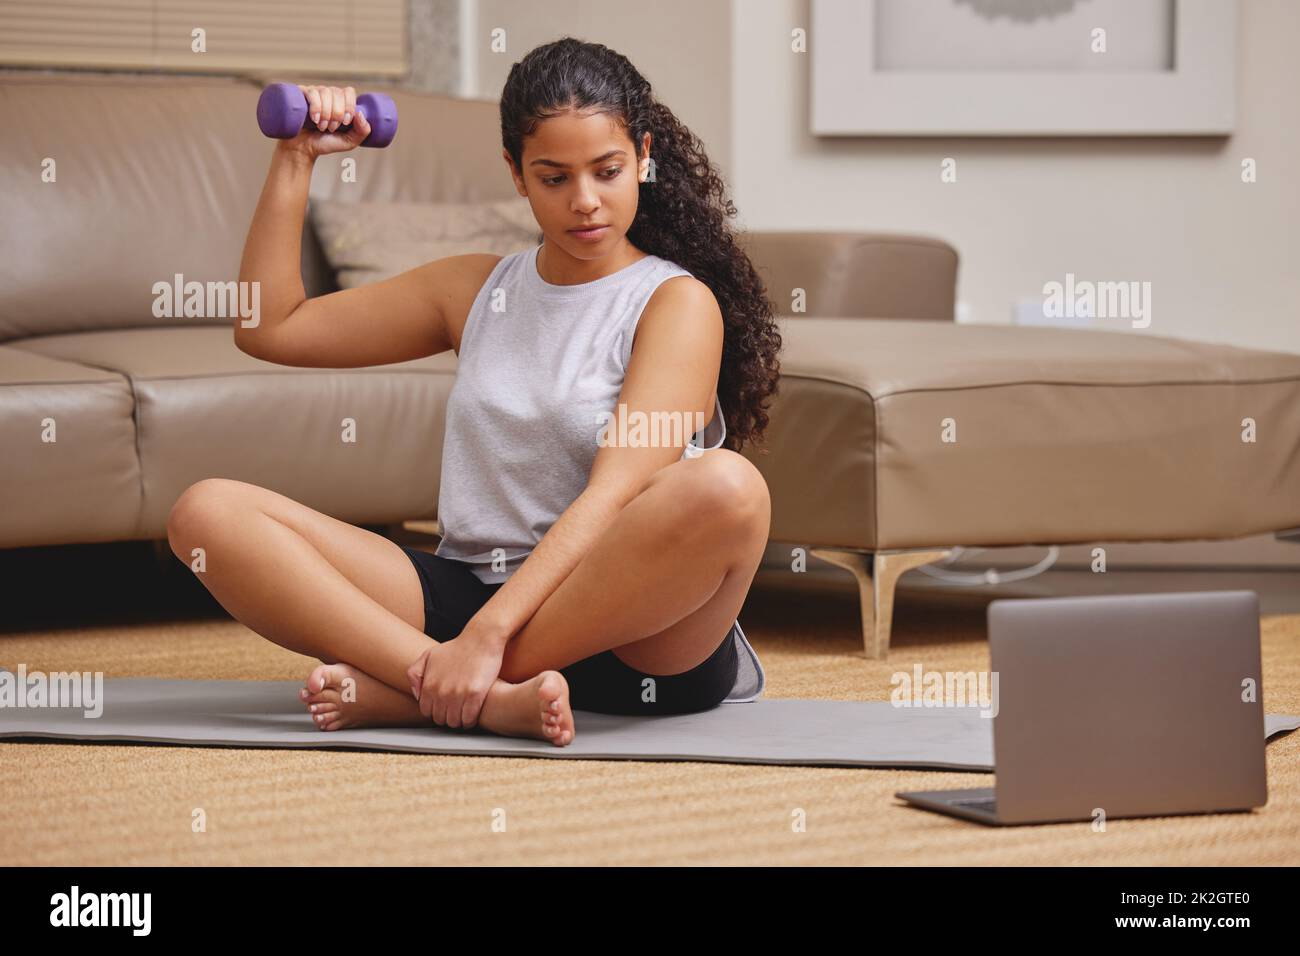 Heres zu stärkeren Armen. Ganzkörperaufnahme einer jungen Frau, die ihren Laptop benutzt, um einen Online-Fitnesskurs in ihrem Wohnzimmer zu verfolgen. Stockfoto